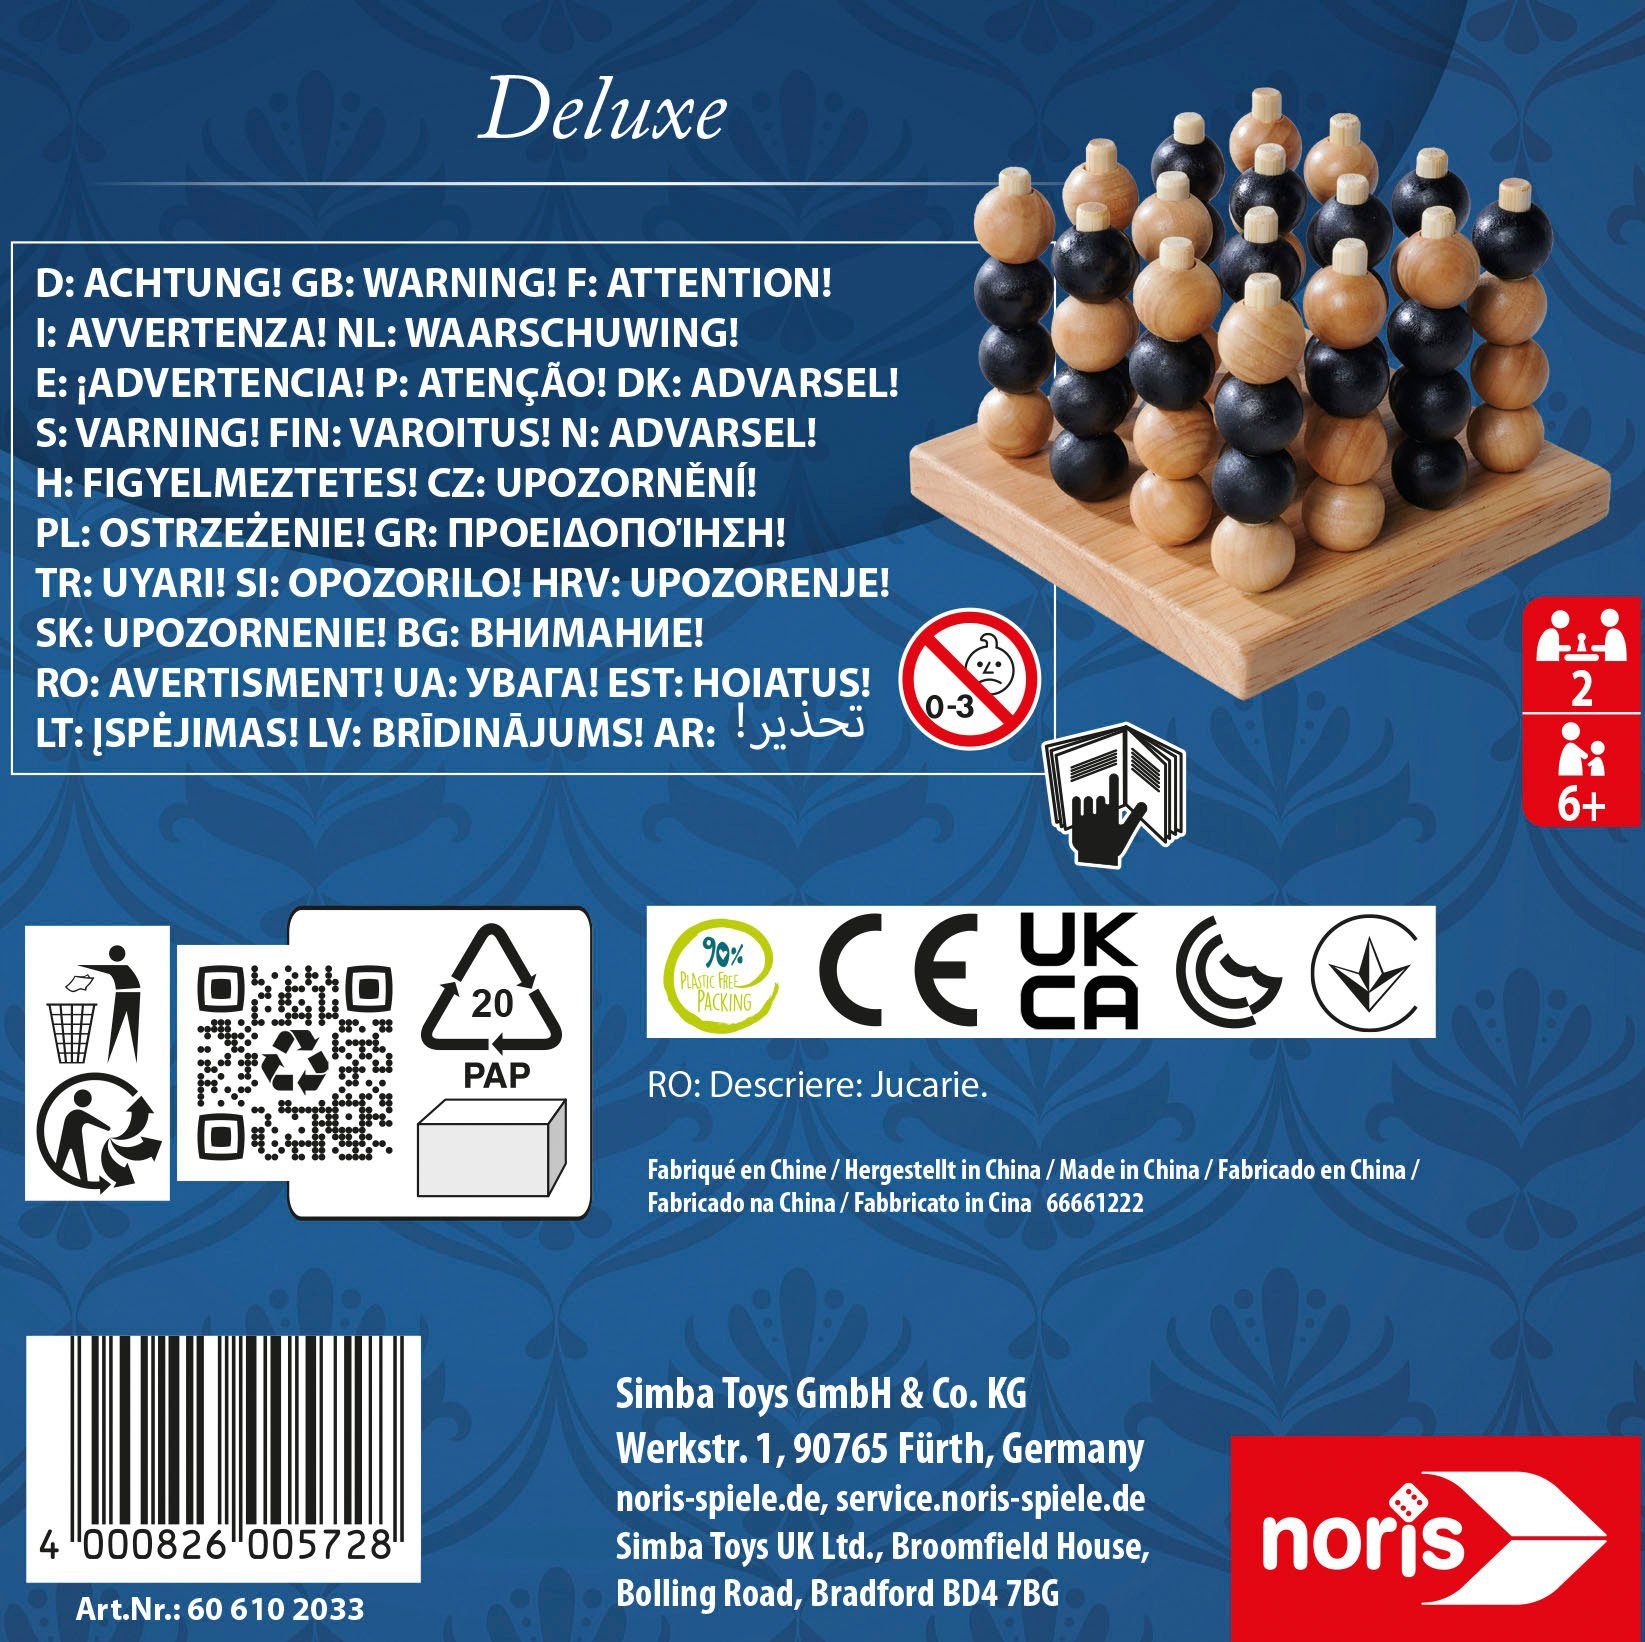 Deluxe Noris Reihe Spiel, 3D 4er